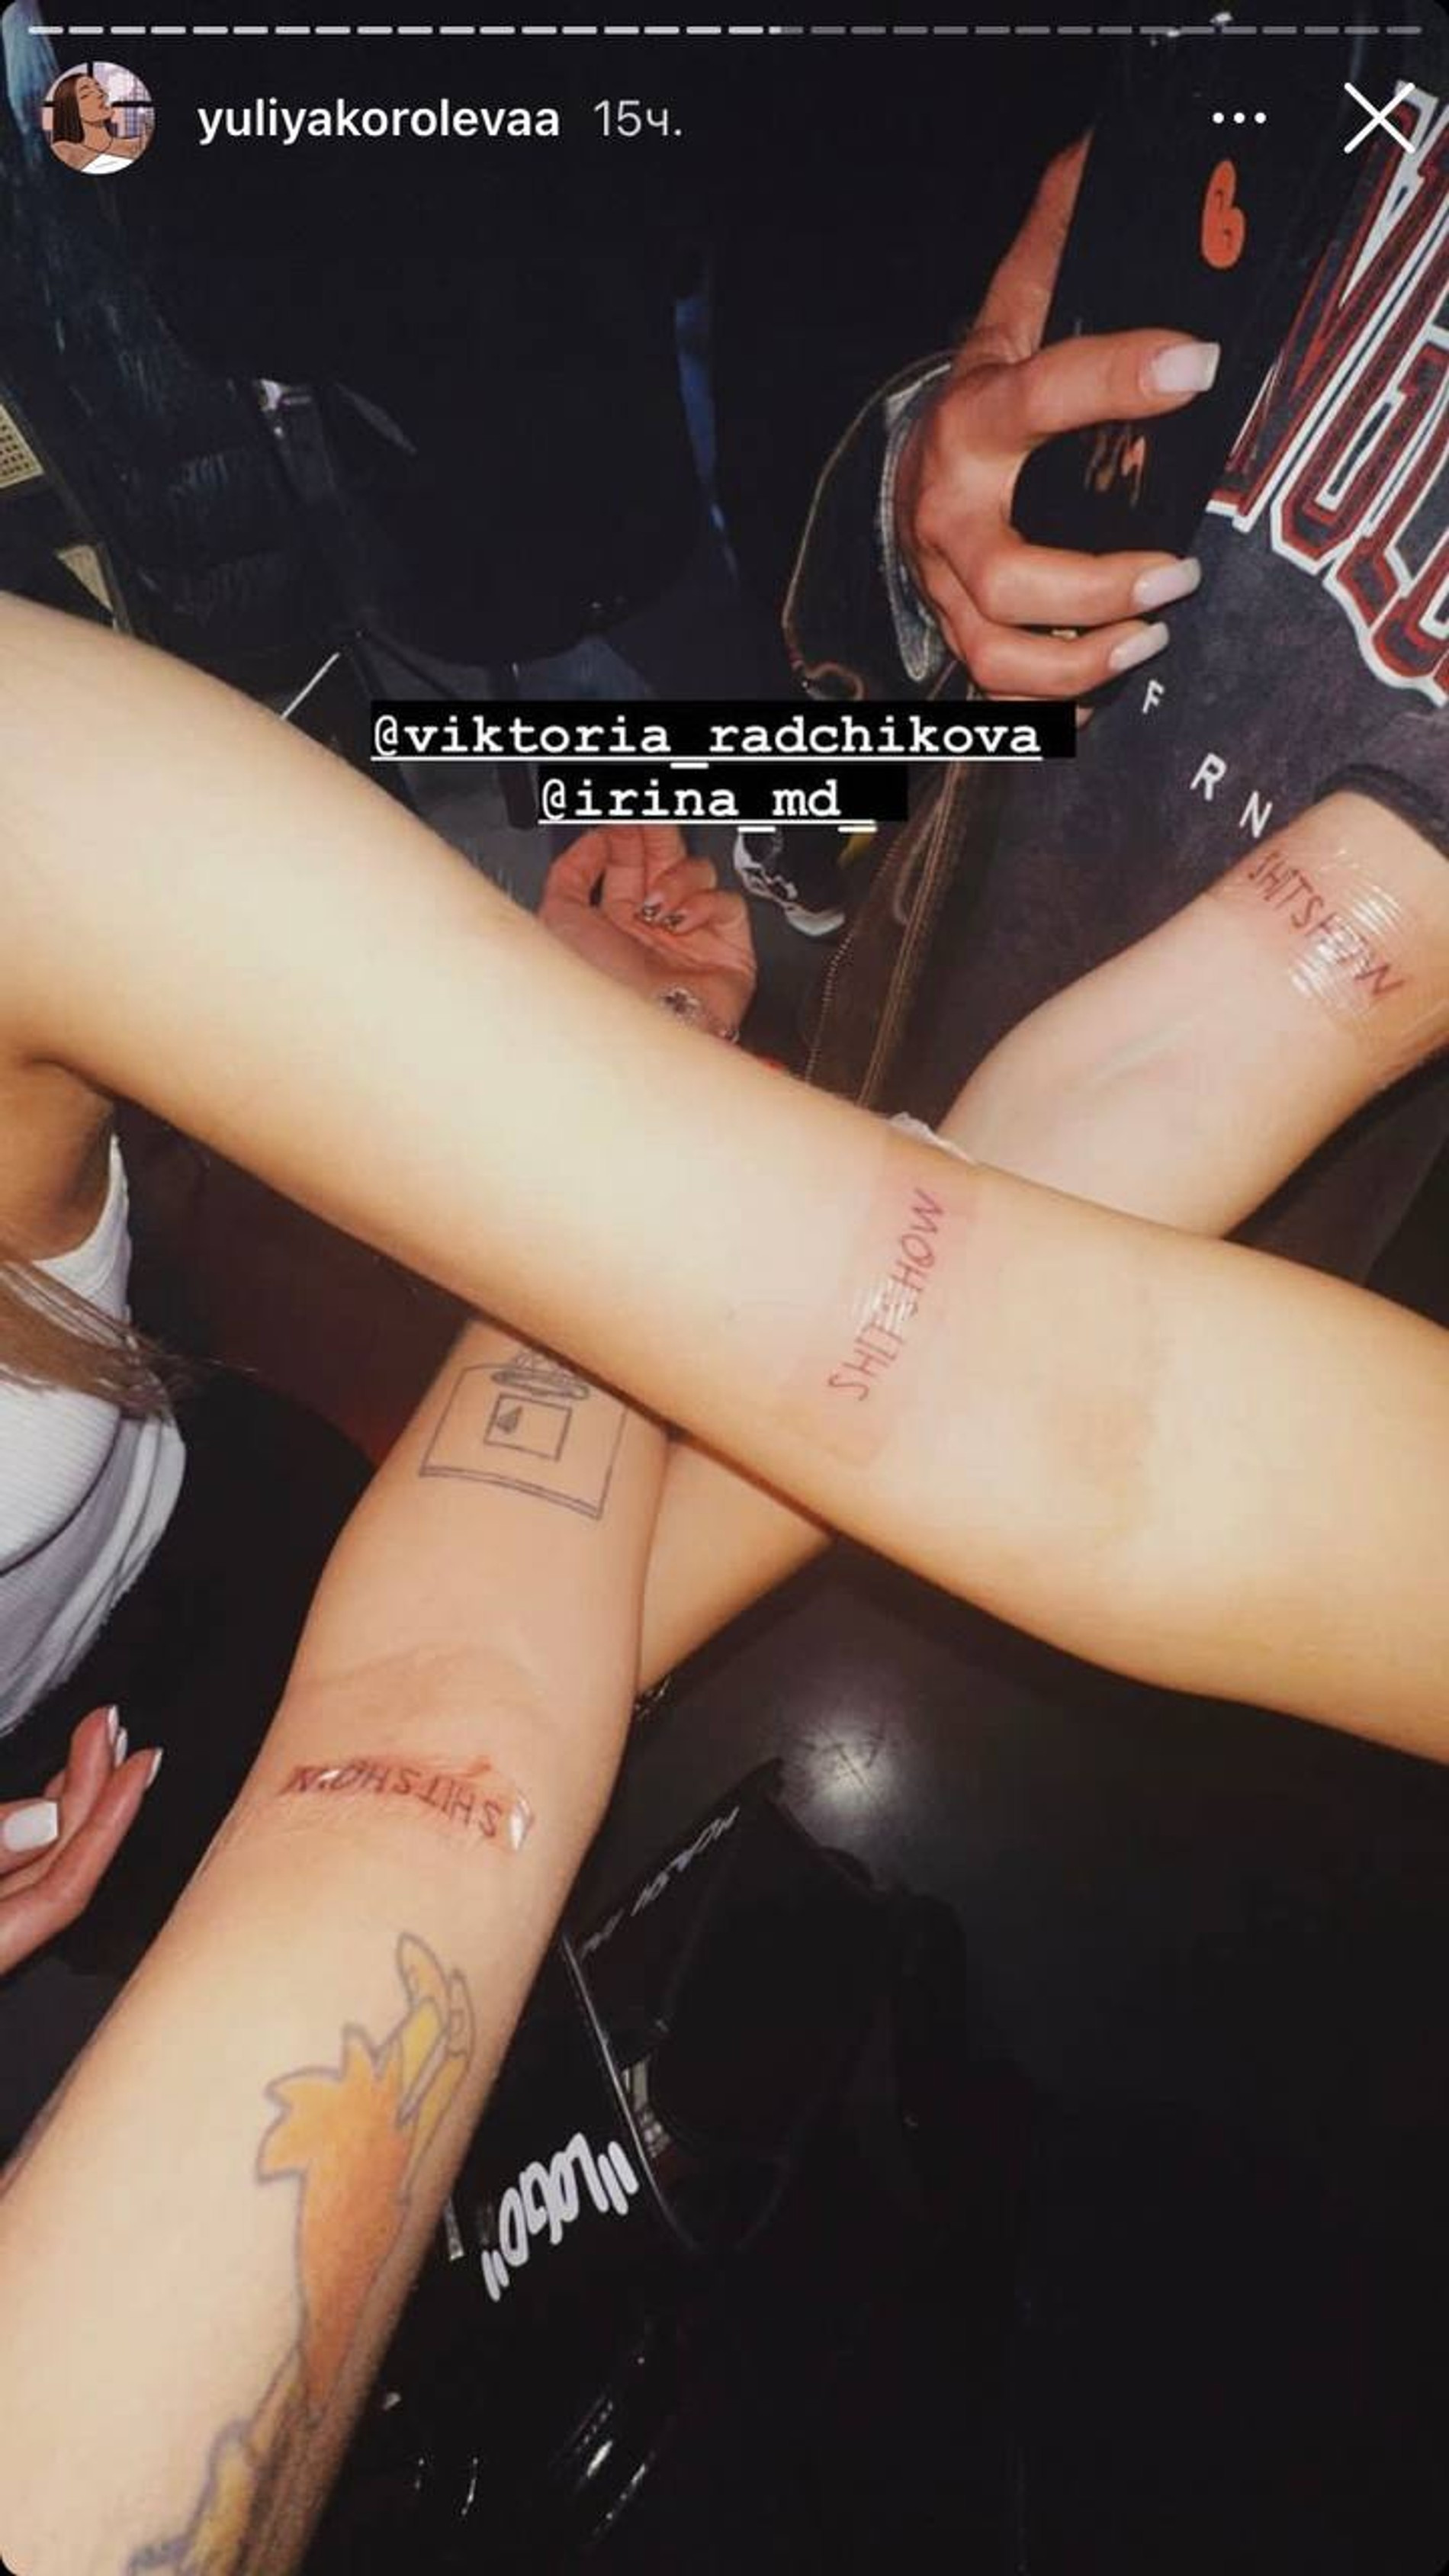 Юля и ее подруги с новыми татуировками
Фото: Инстаграм (запрещен в РФ) @yuliyakorolevaa